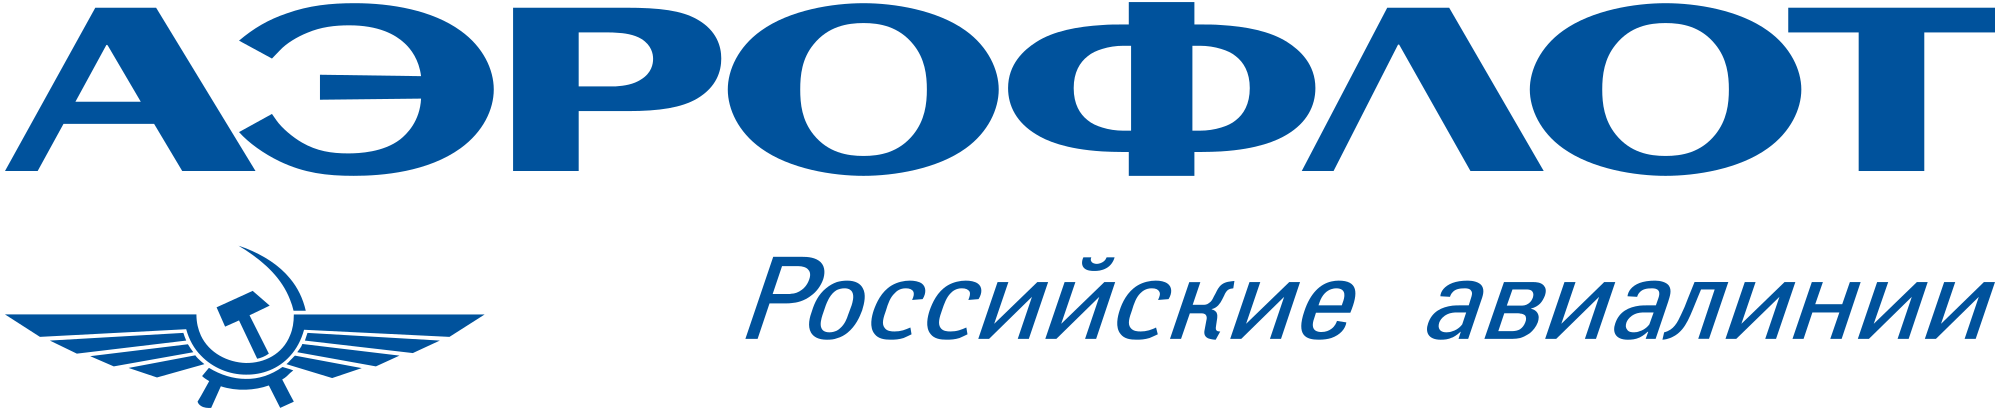 Aeroflot logo. Aeroflot_logo_